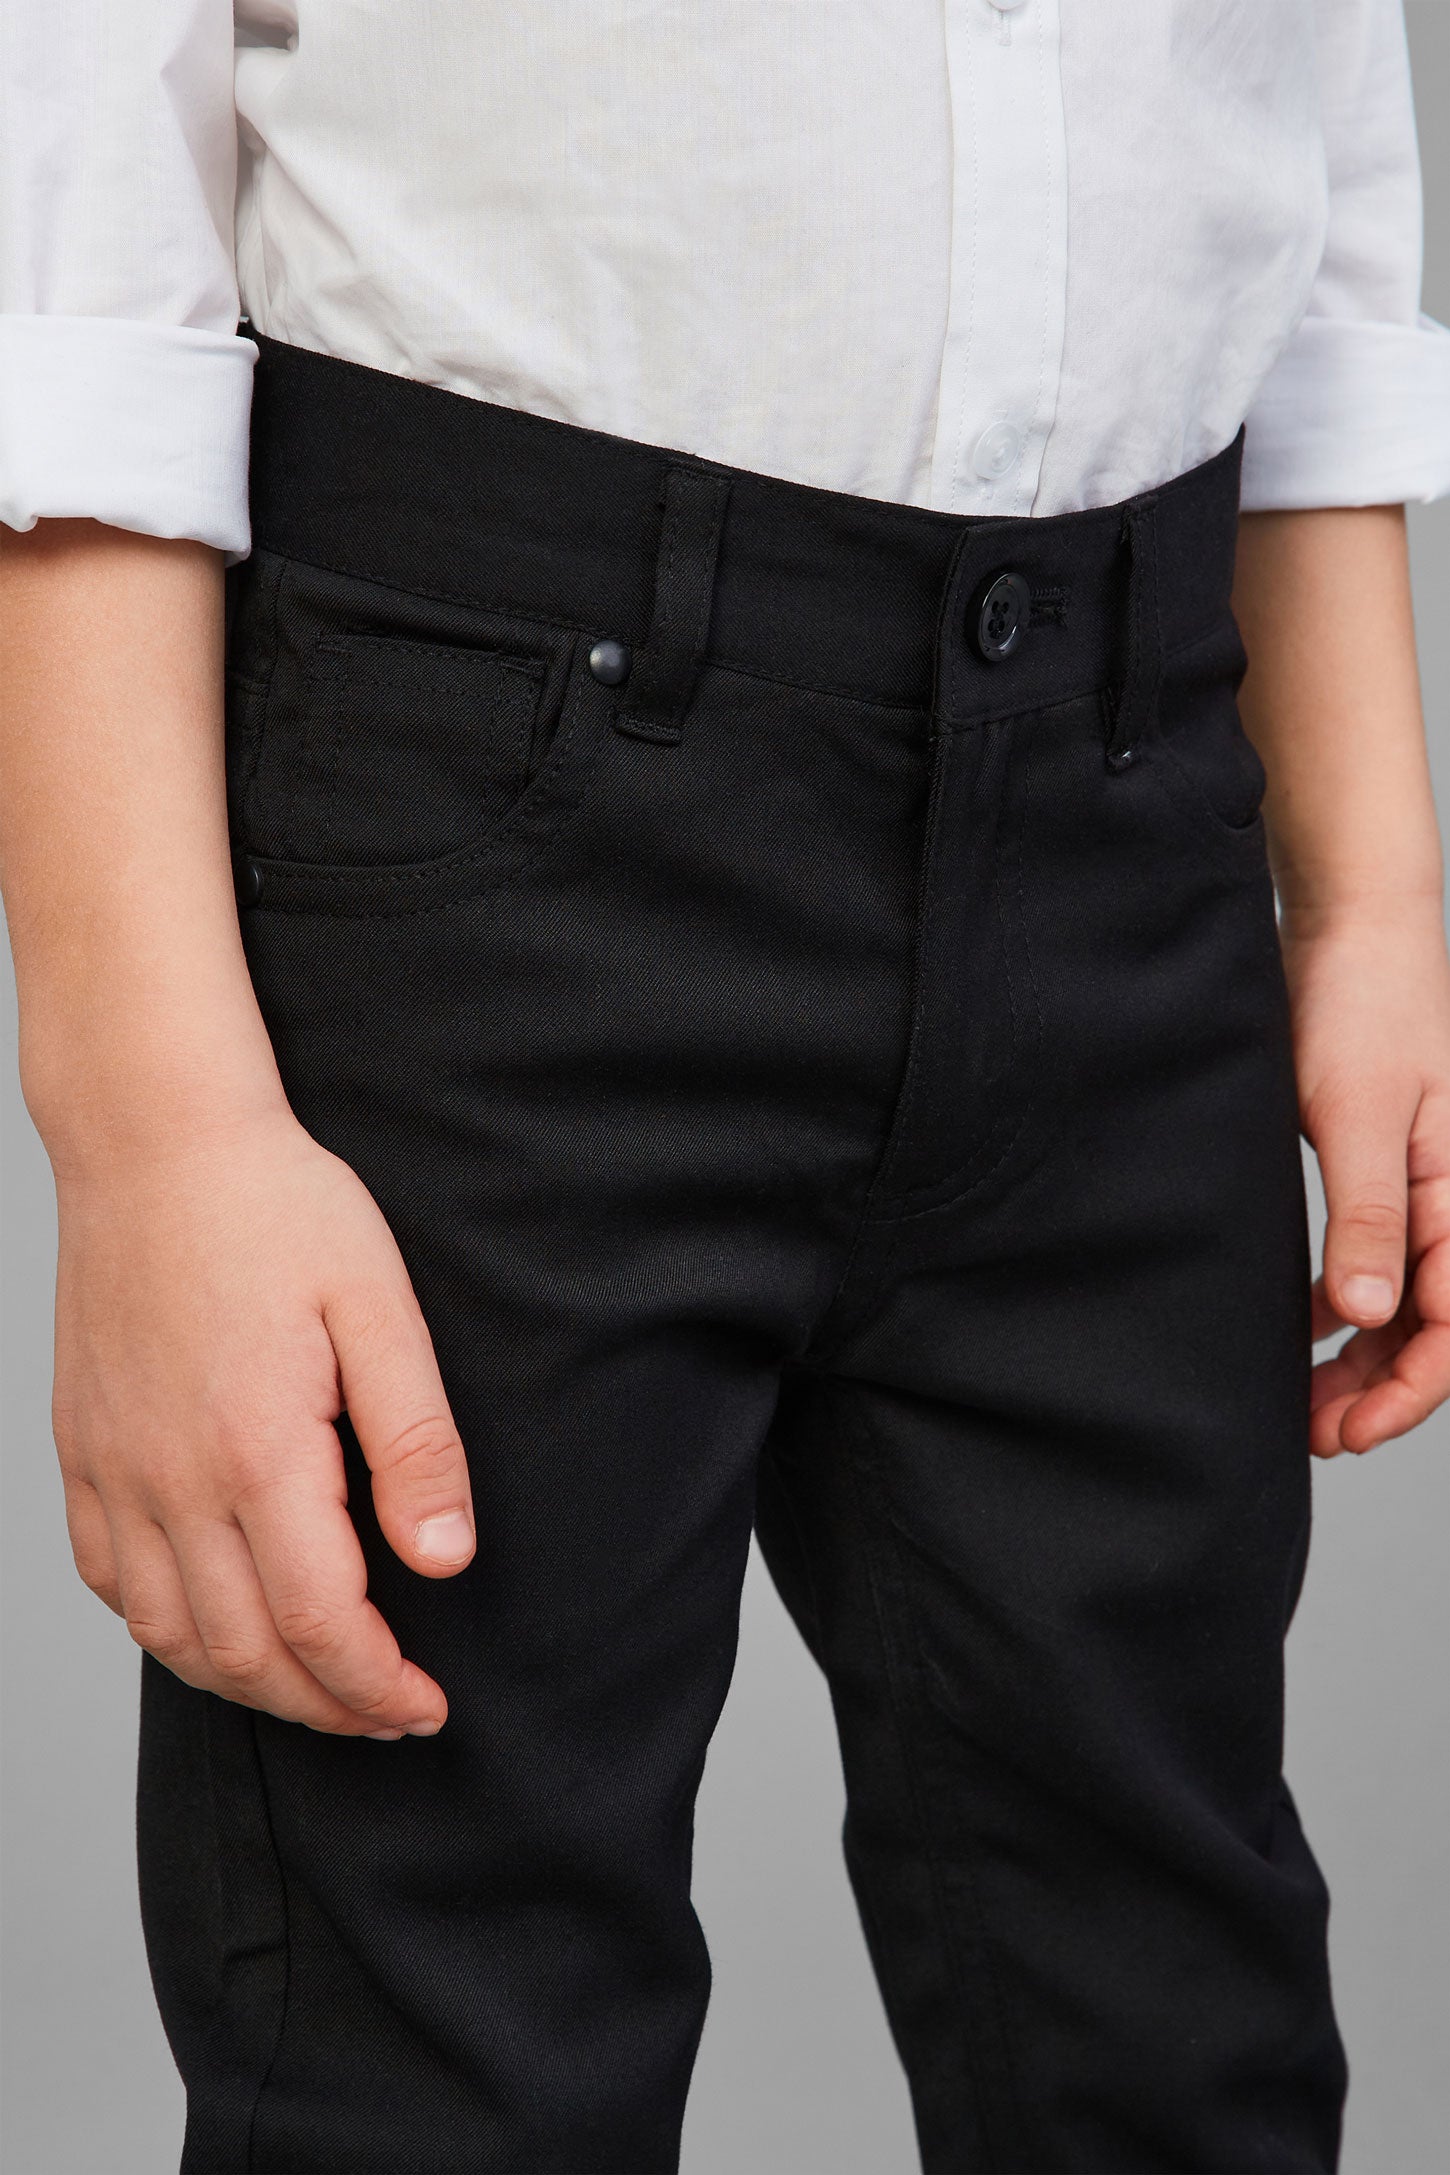 Pantalon habillé taille ajustable - Enfant garçon && NOIR